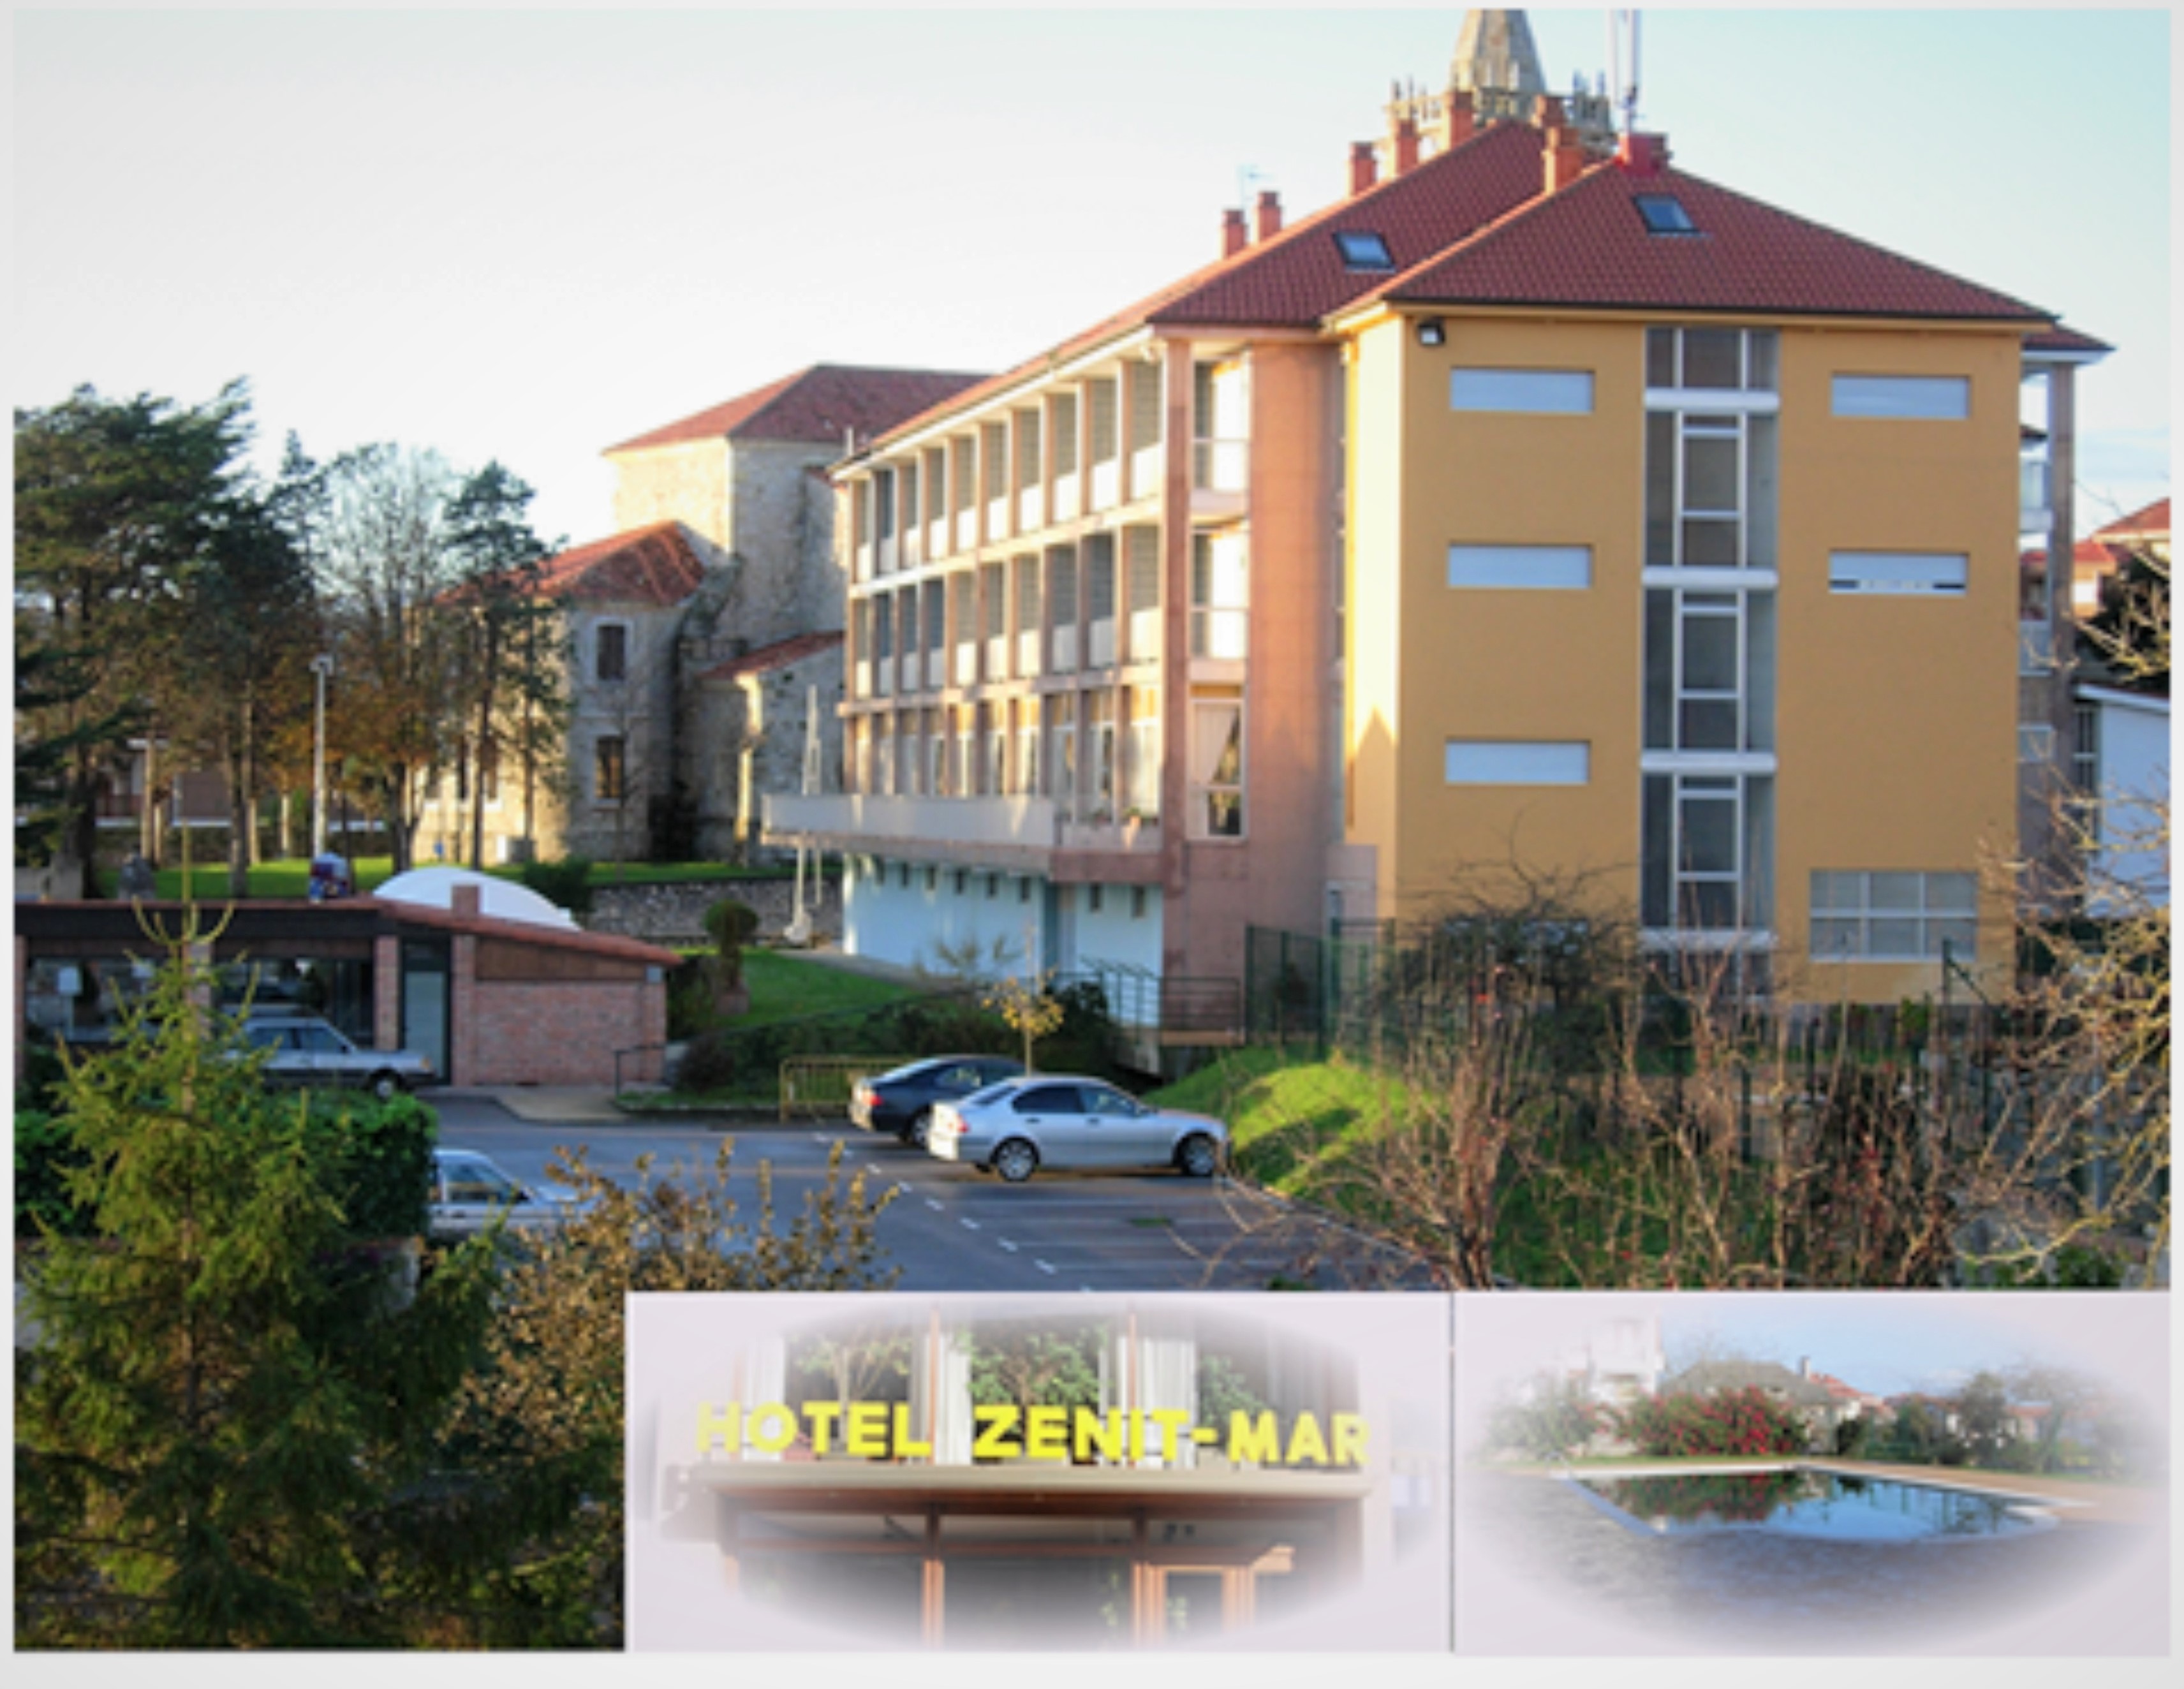 Noja-Hotel Zenit Mar